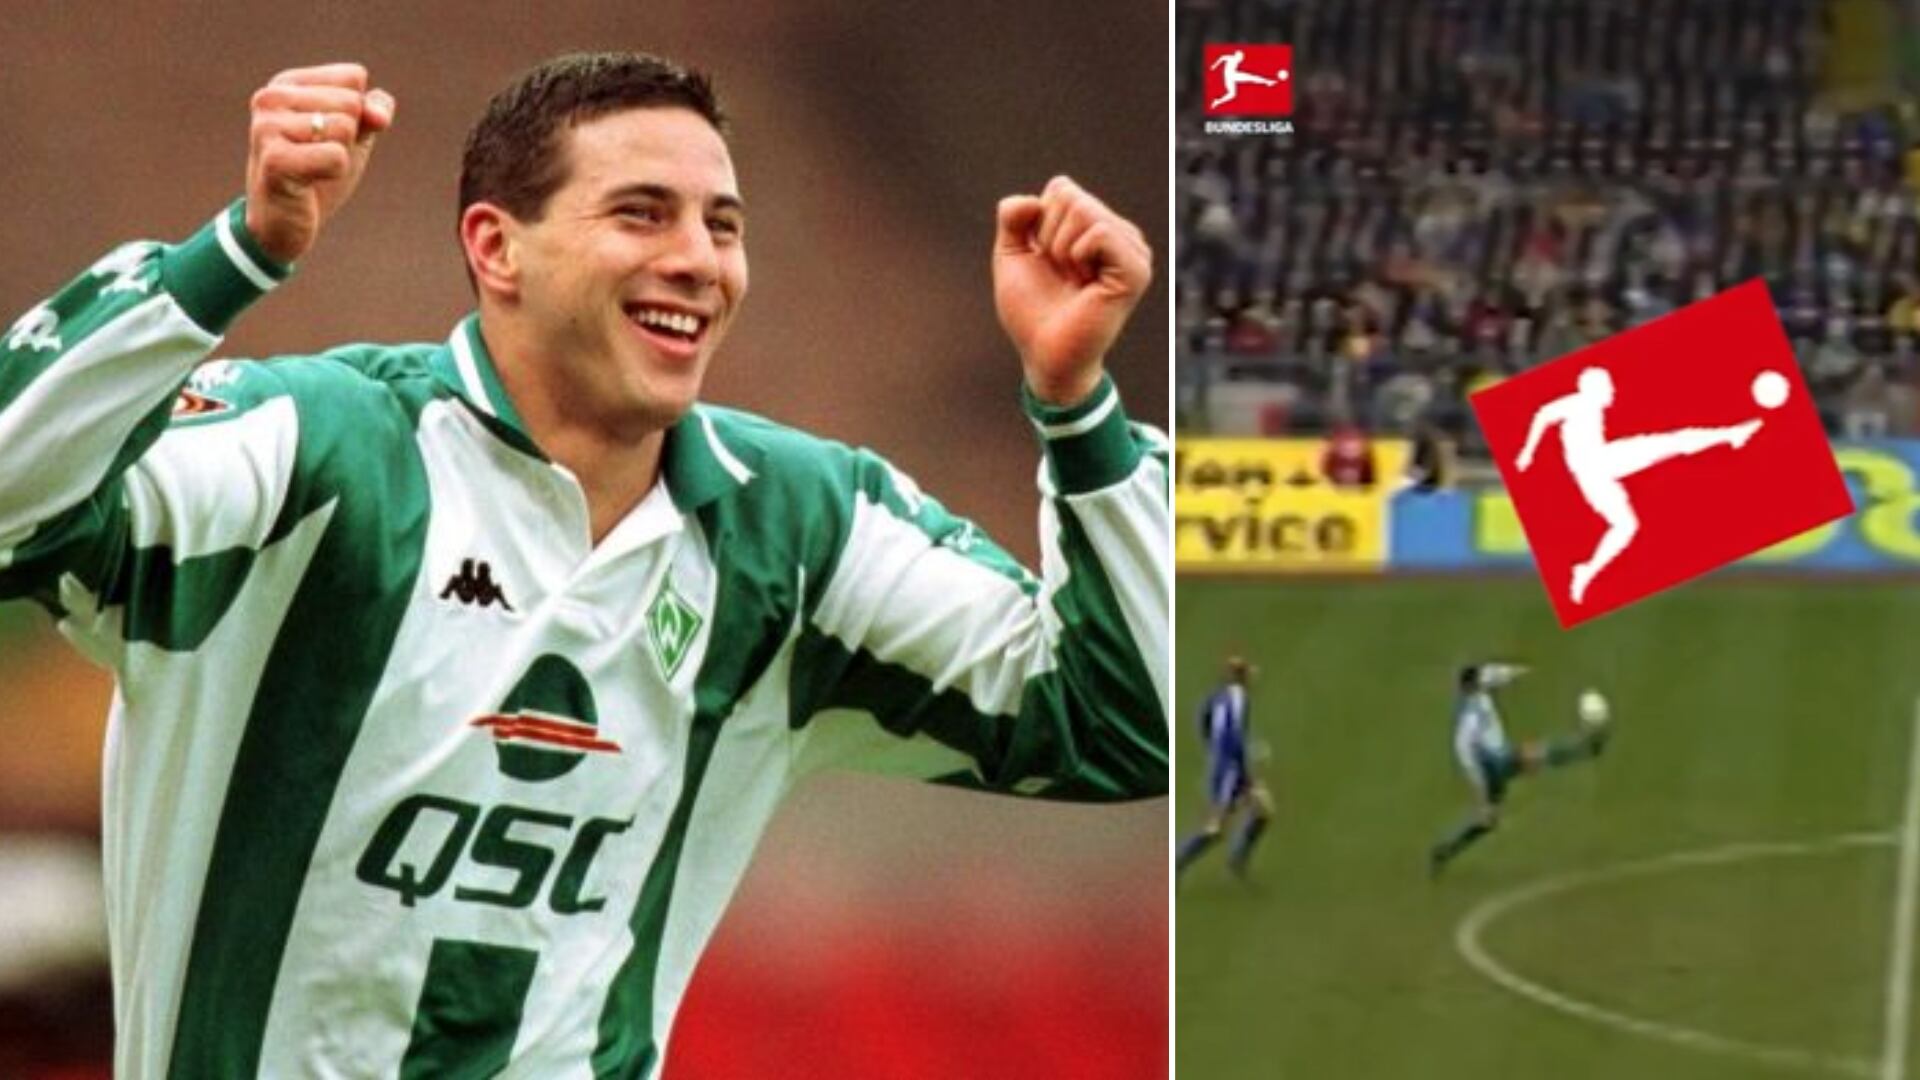 El control de Claudio Pizarro previo a su mítico gol contra Schalke 04 en 2001, tiene un parecido con el logo de la Bundesliga.